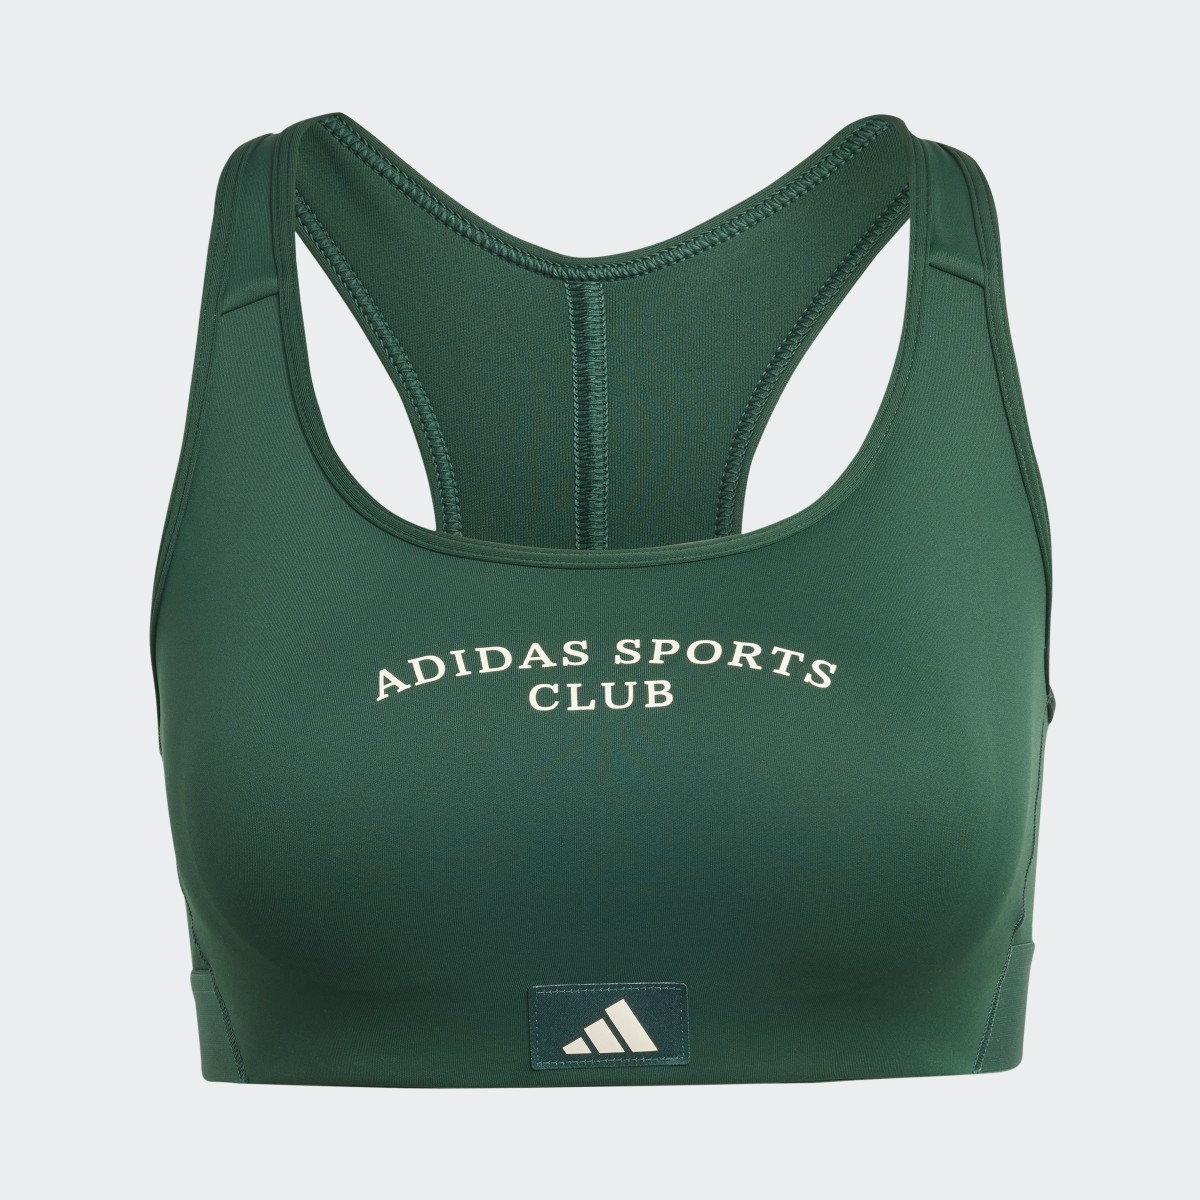 Adidas Sports Club Medium-Support Bra. 5